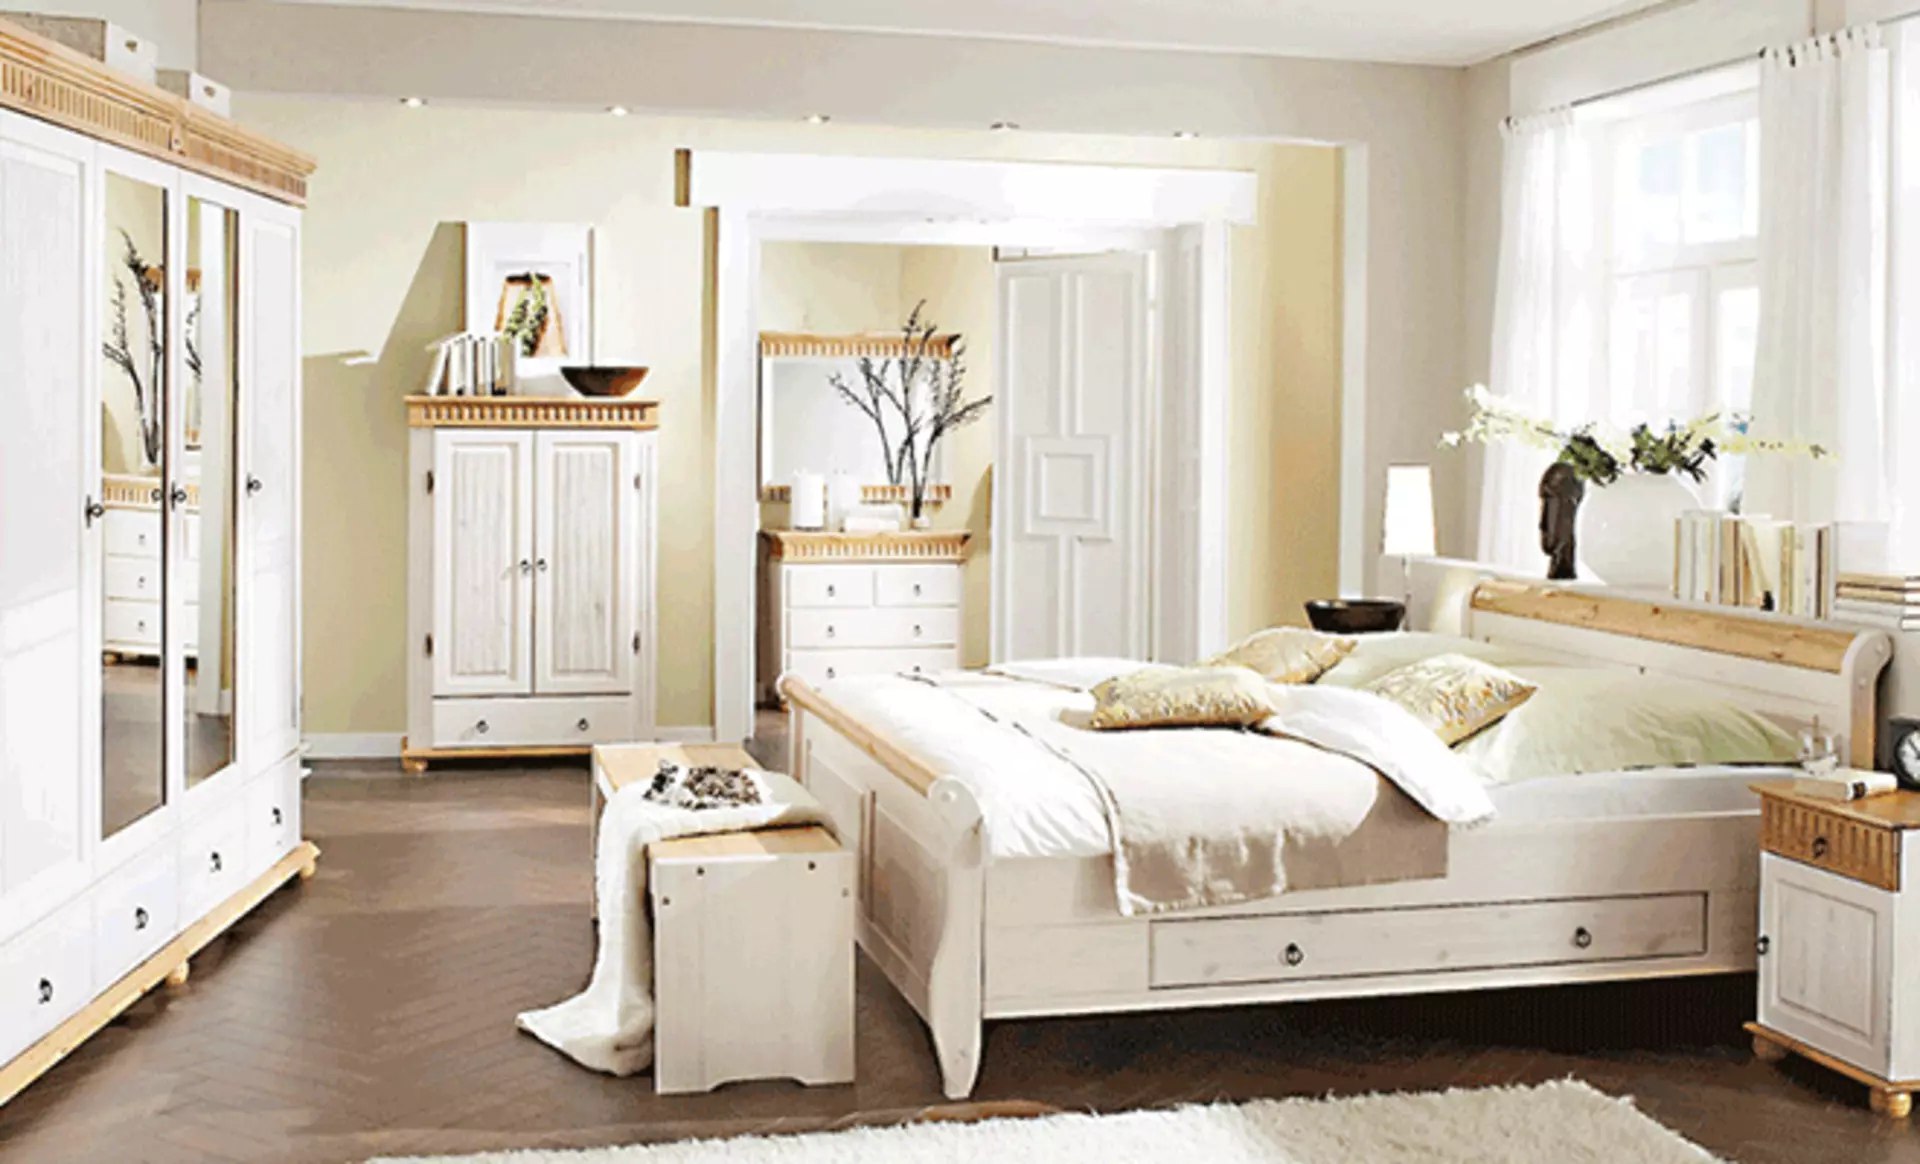 Schlafzimmer im Landhausstil zeigt großes Bett und breiten Kleiderschrank.- Die Möbel sind aus Holz, dabei sind einige Elemente naturbelassen, der Großteil jedoch weiß lasiert.